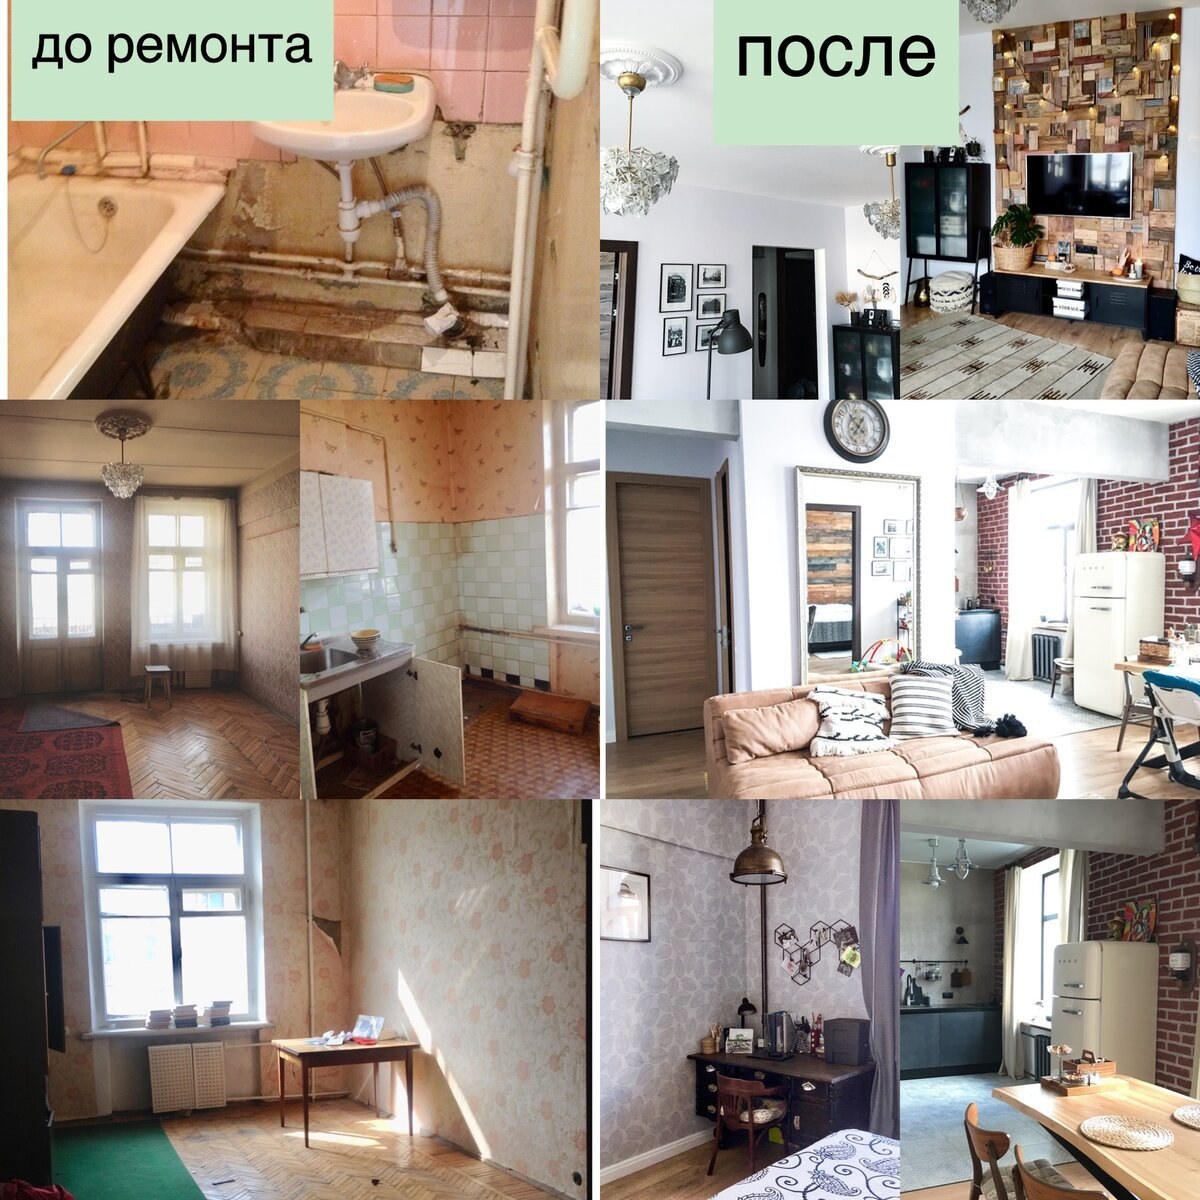 Ремонт дома - Ремонт коттеджа под ключ Киев, цена, стоимость